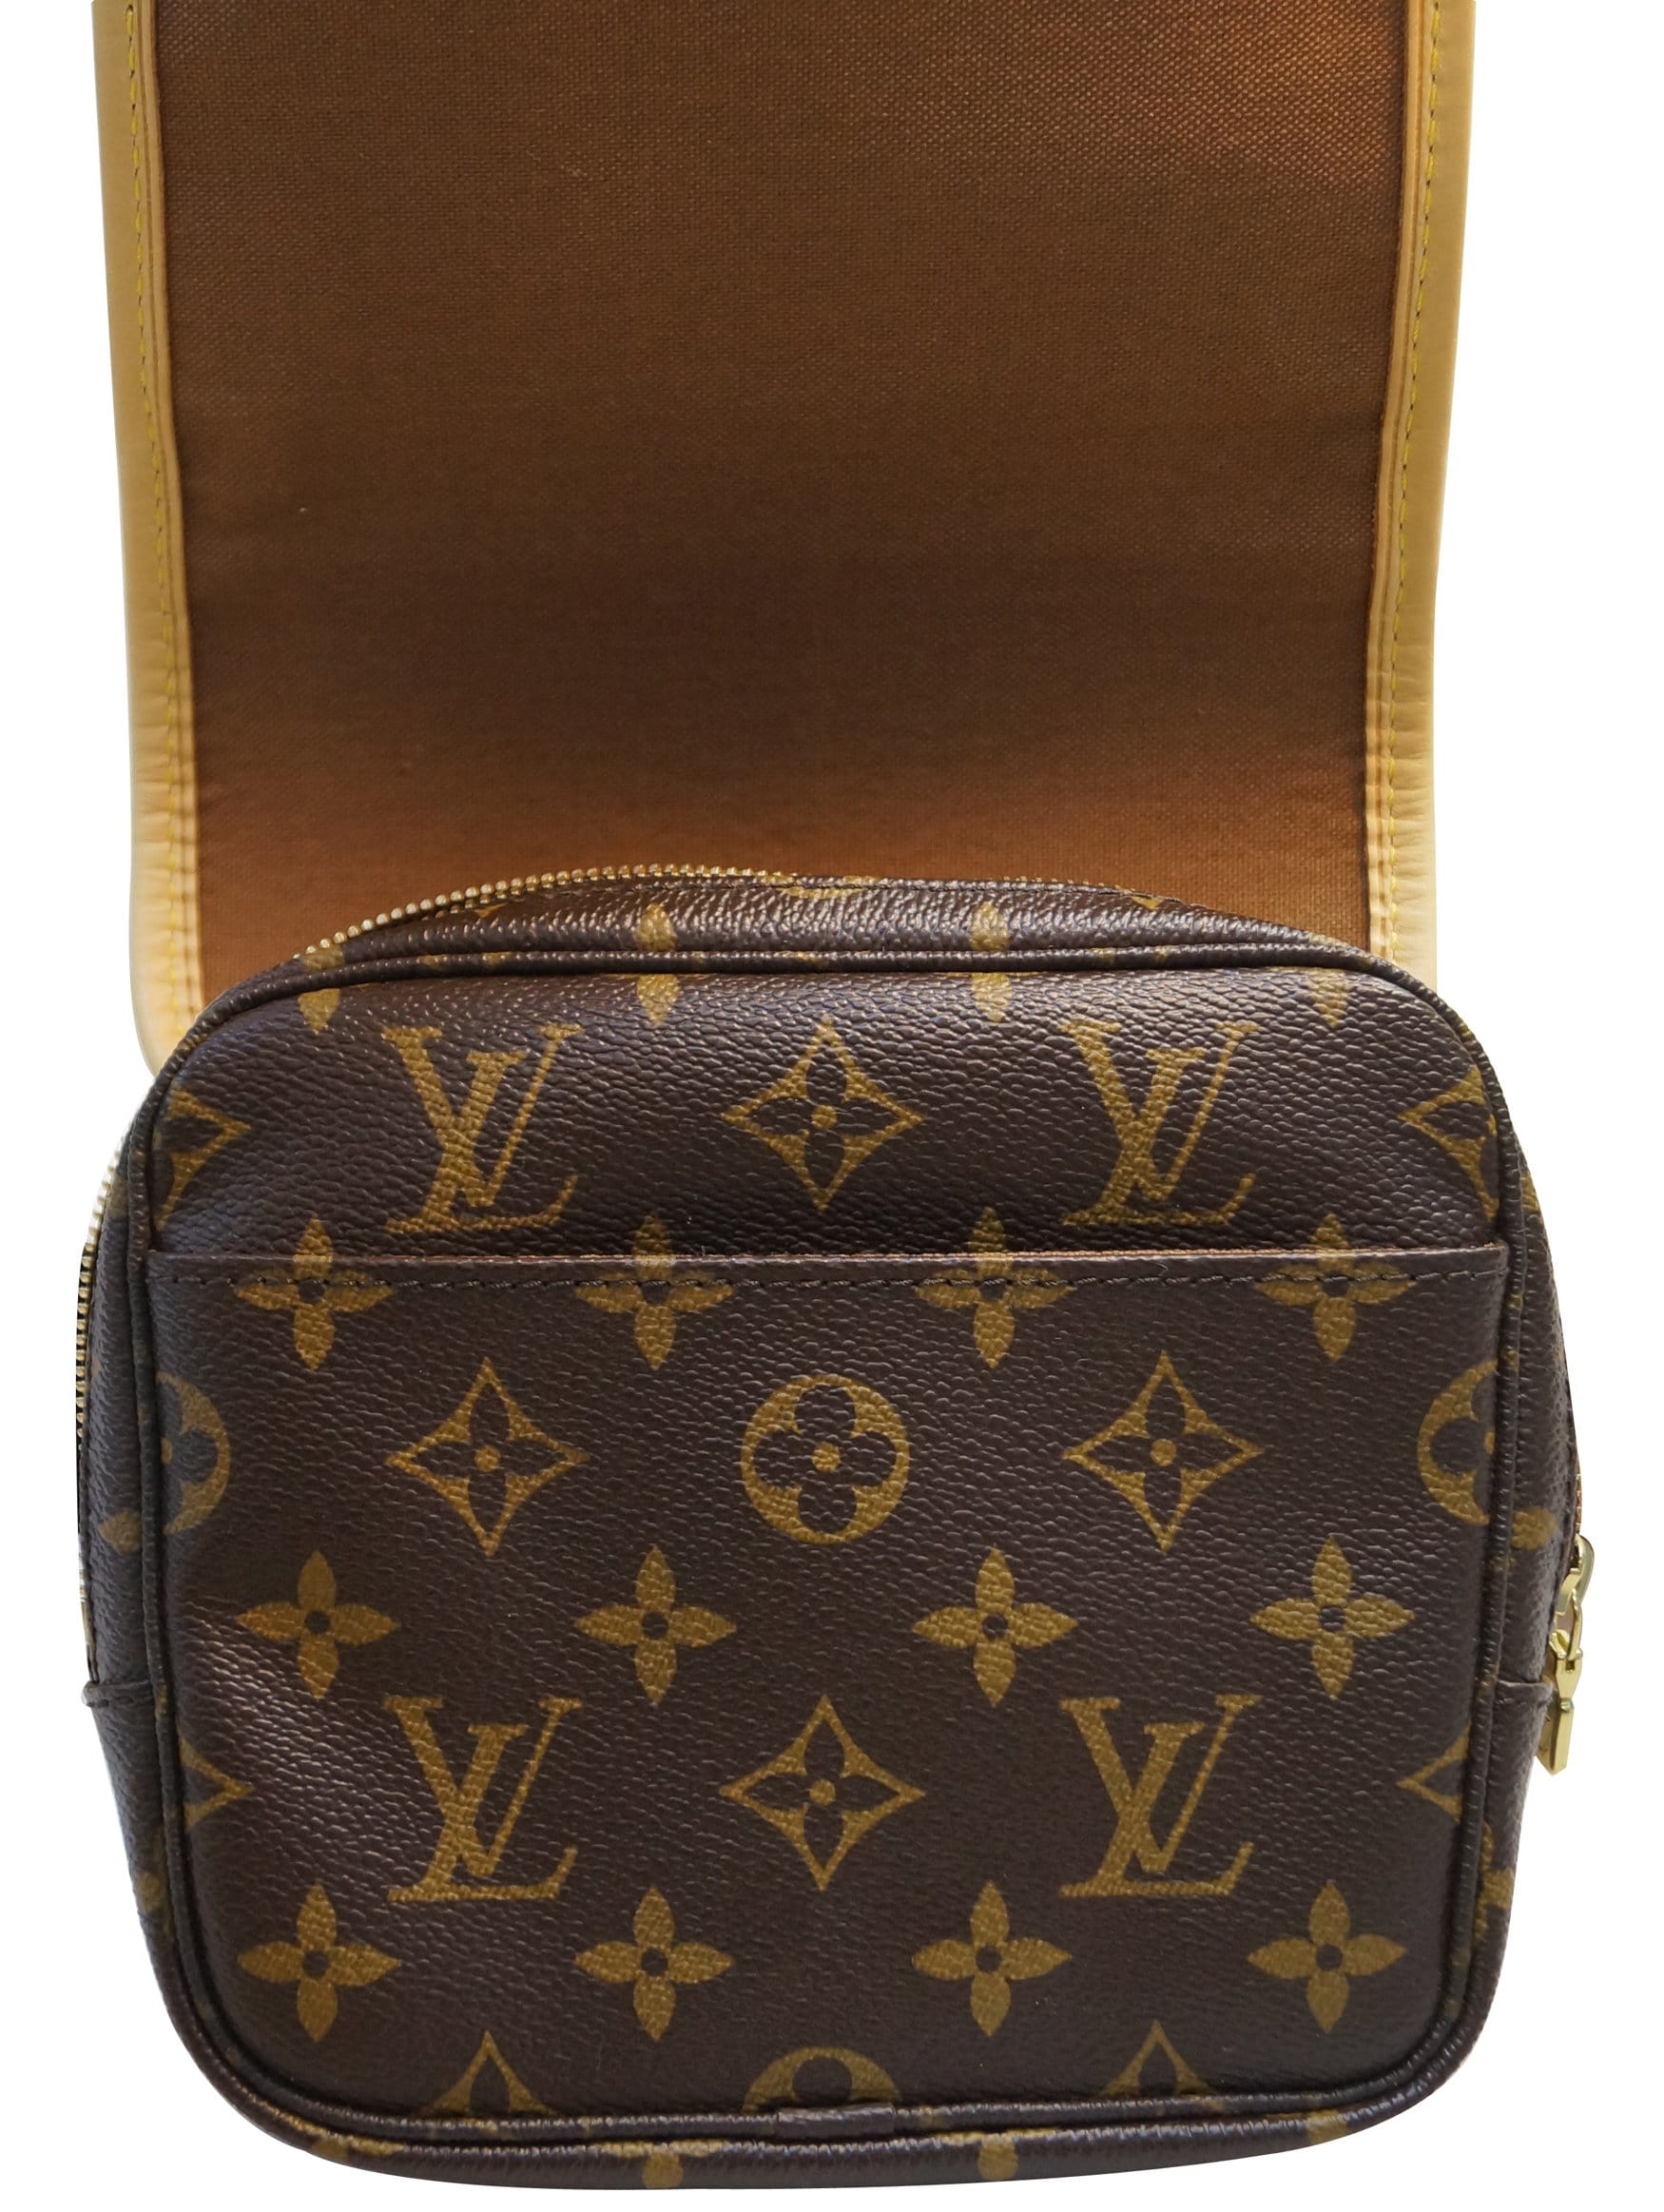 AUTHENTIC LOUIS VUITTON Bosphore Bum Bag Waist Pouch Monogram Fanny Pack  Belt $498.00 - PicClick